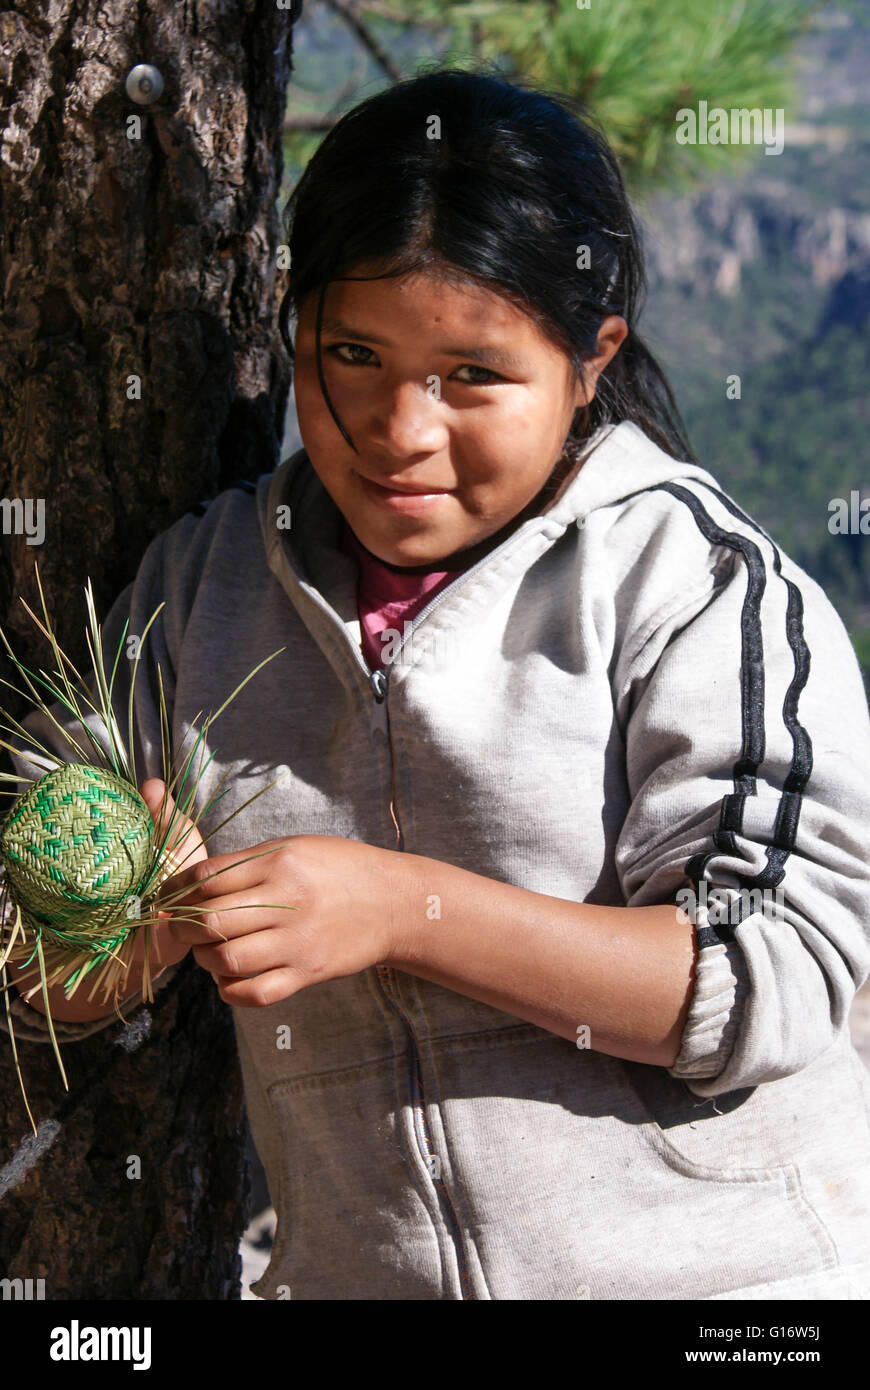 Creel, México - Octubre 9, 2014: Los indígenas tarahumaras chica es visto portando tradicional traje brillante en Barrancas del Cobre, Chihuahua, México en octubre Foto de stock